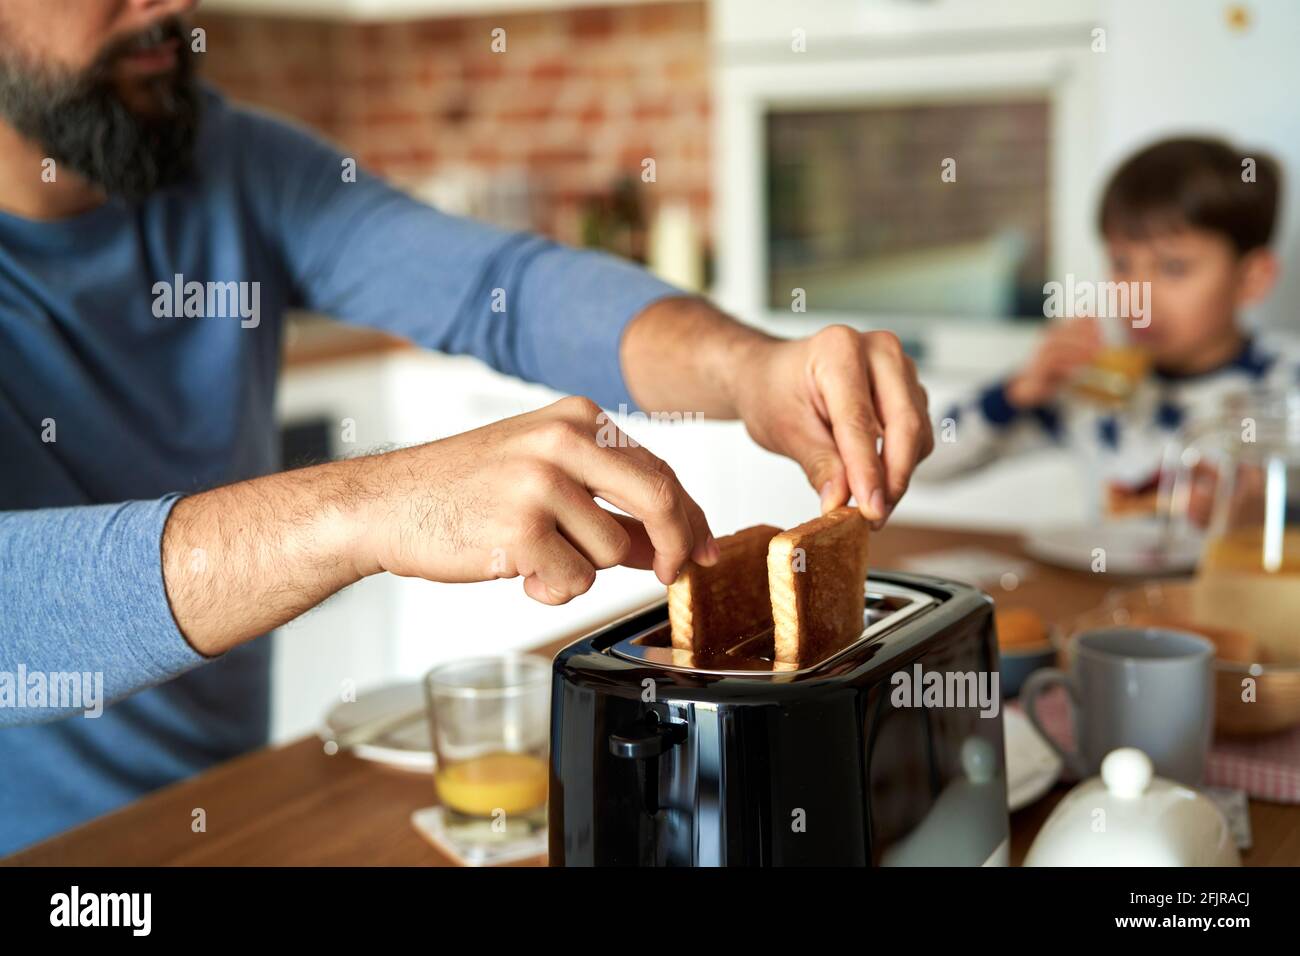 Primer plano del hombre tirando de una tostada de un tostador Foto de stock